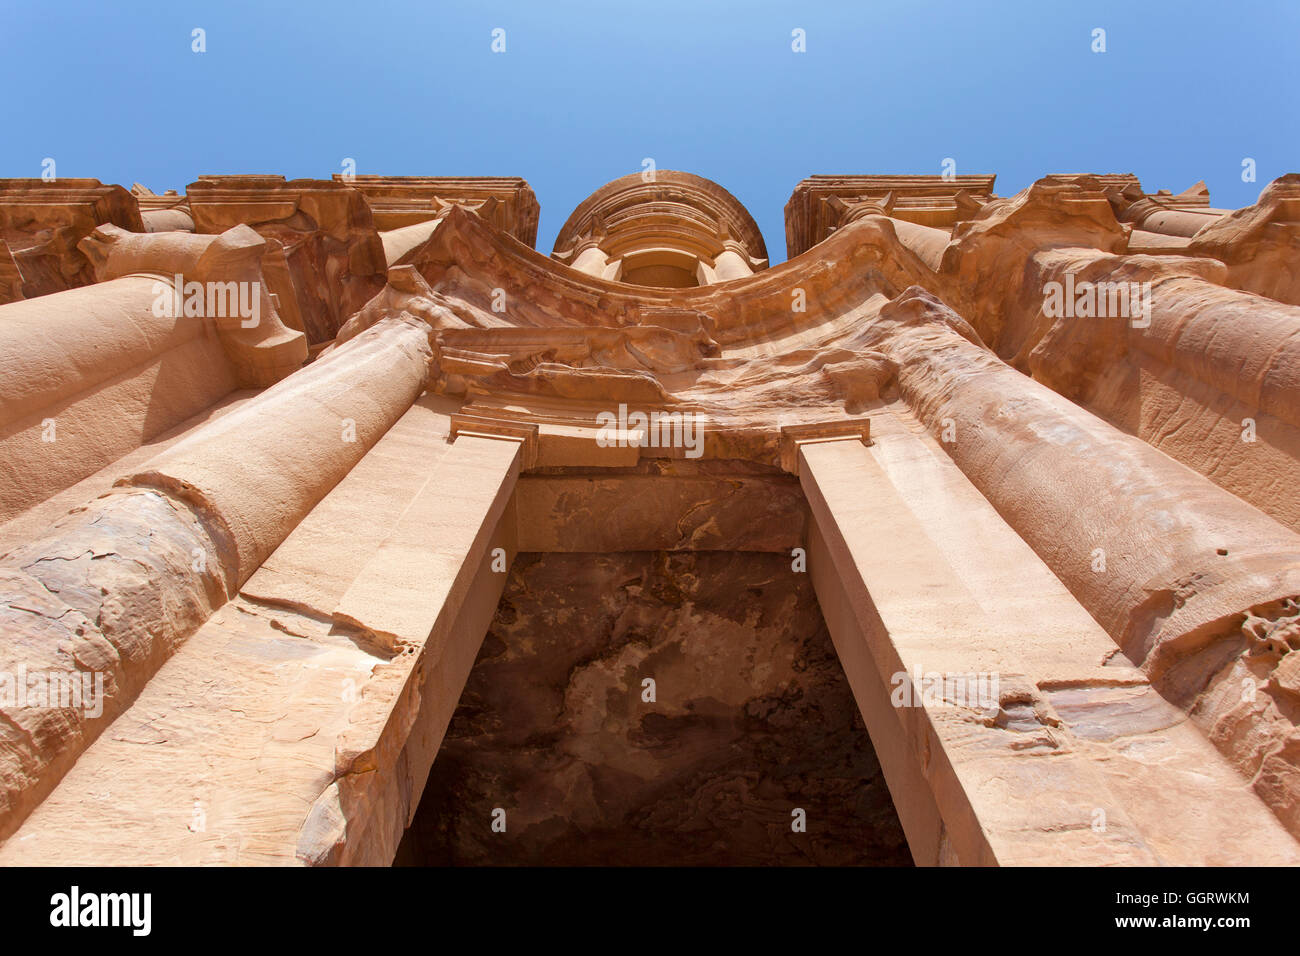 La tombe ad Deir (la « maîtrise ») à Pétra, également connue sous le nom de « ville rose », Jordanie, Moyen-Orient. Banque D'Images